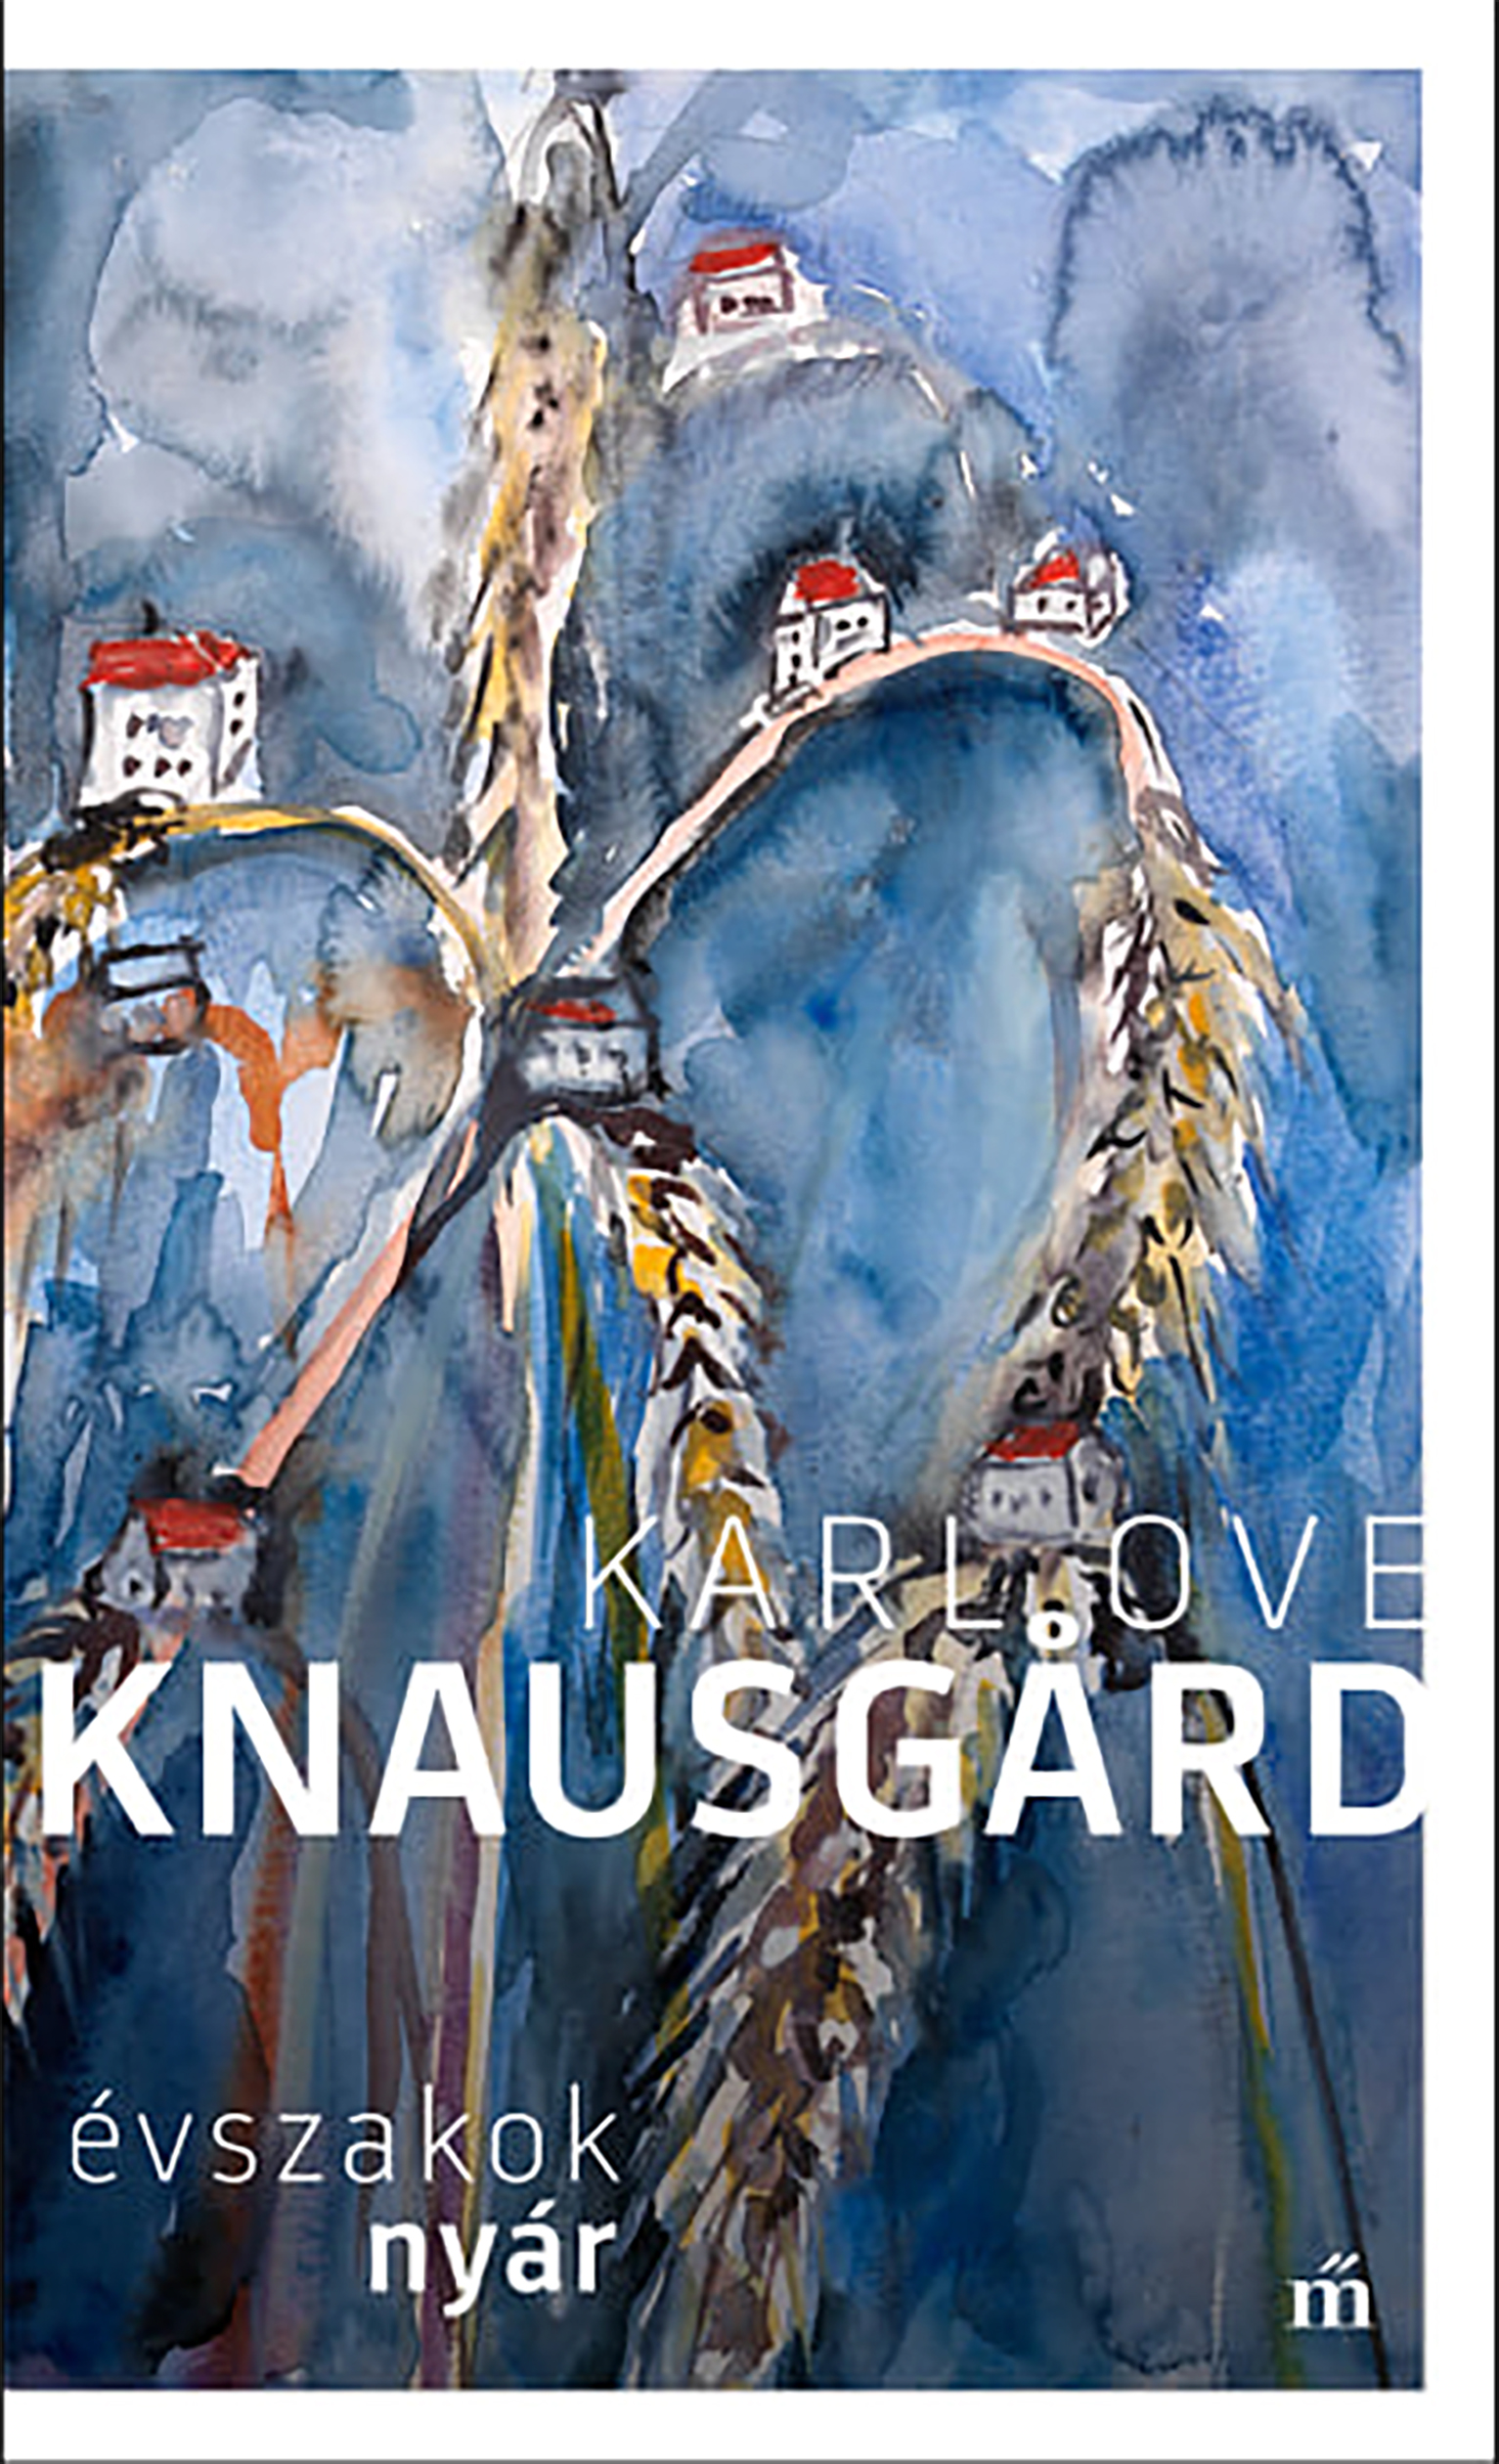 Knausgard, Karl Ove - Nyár. Évszakok